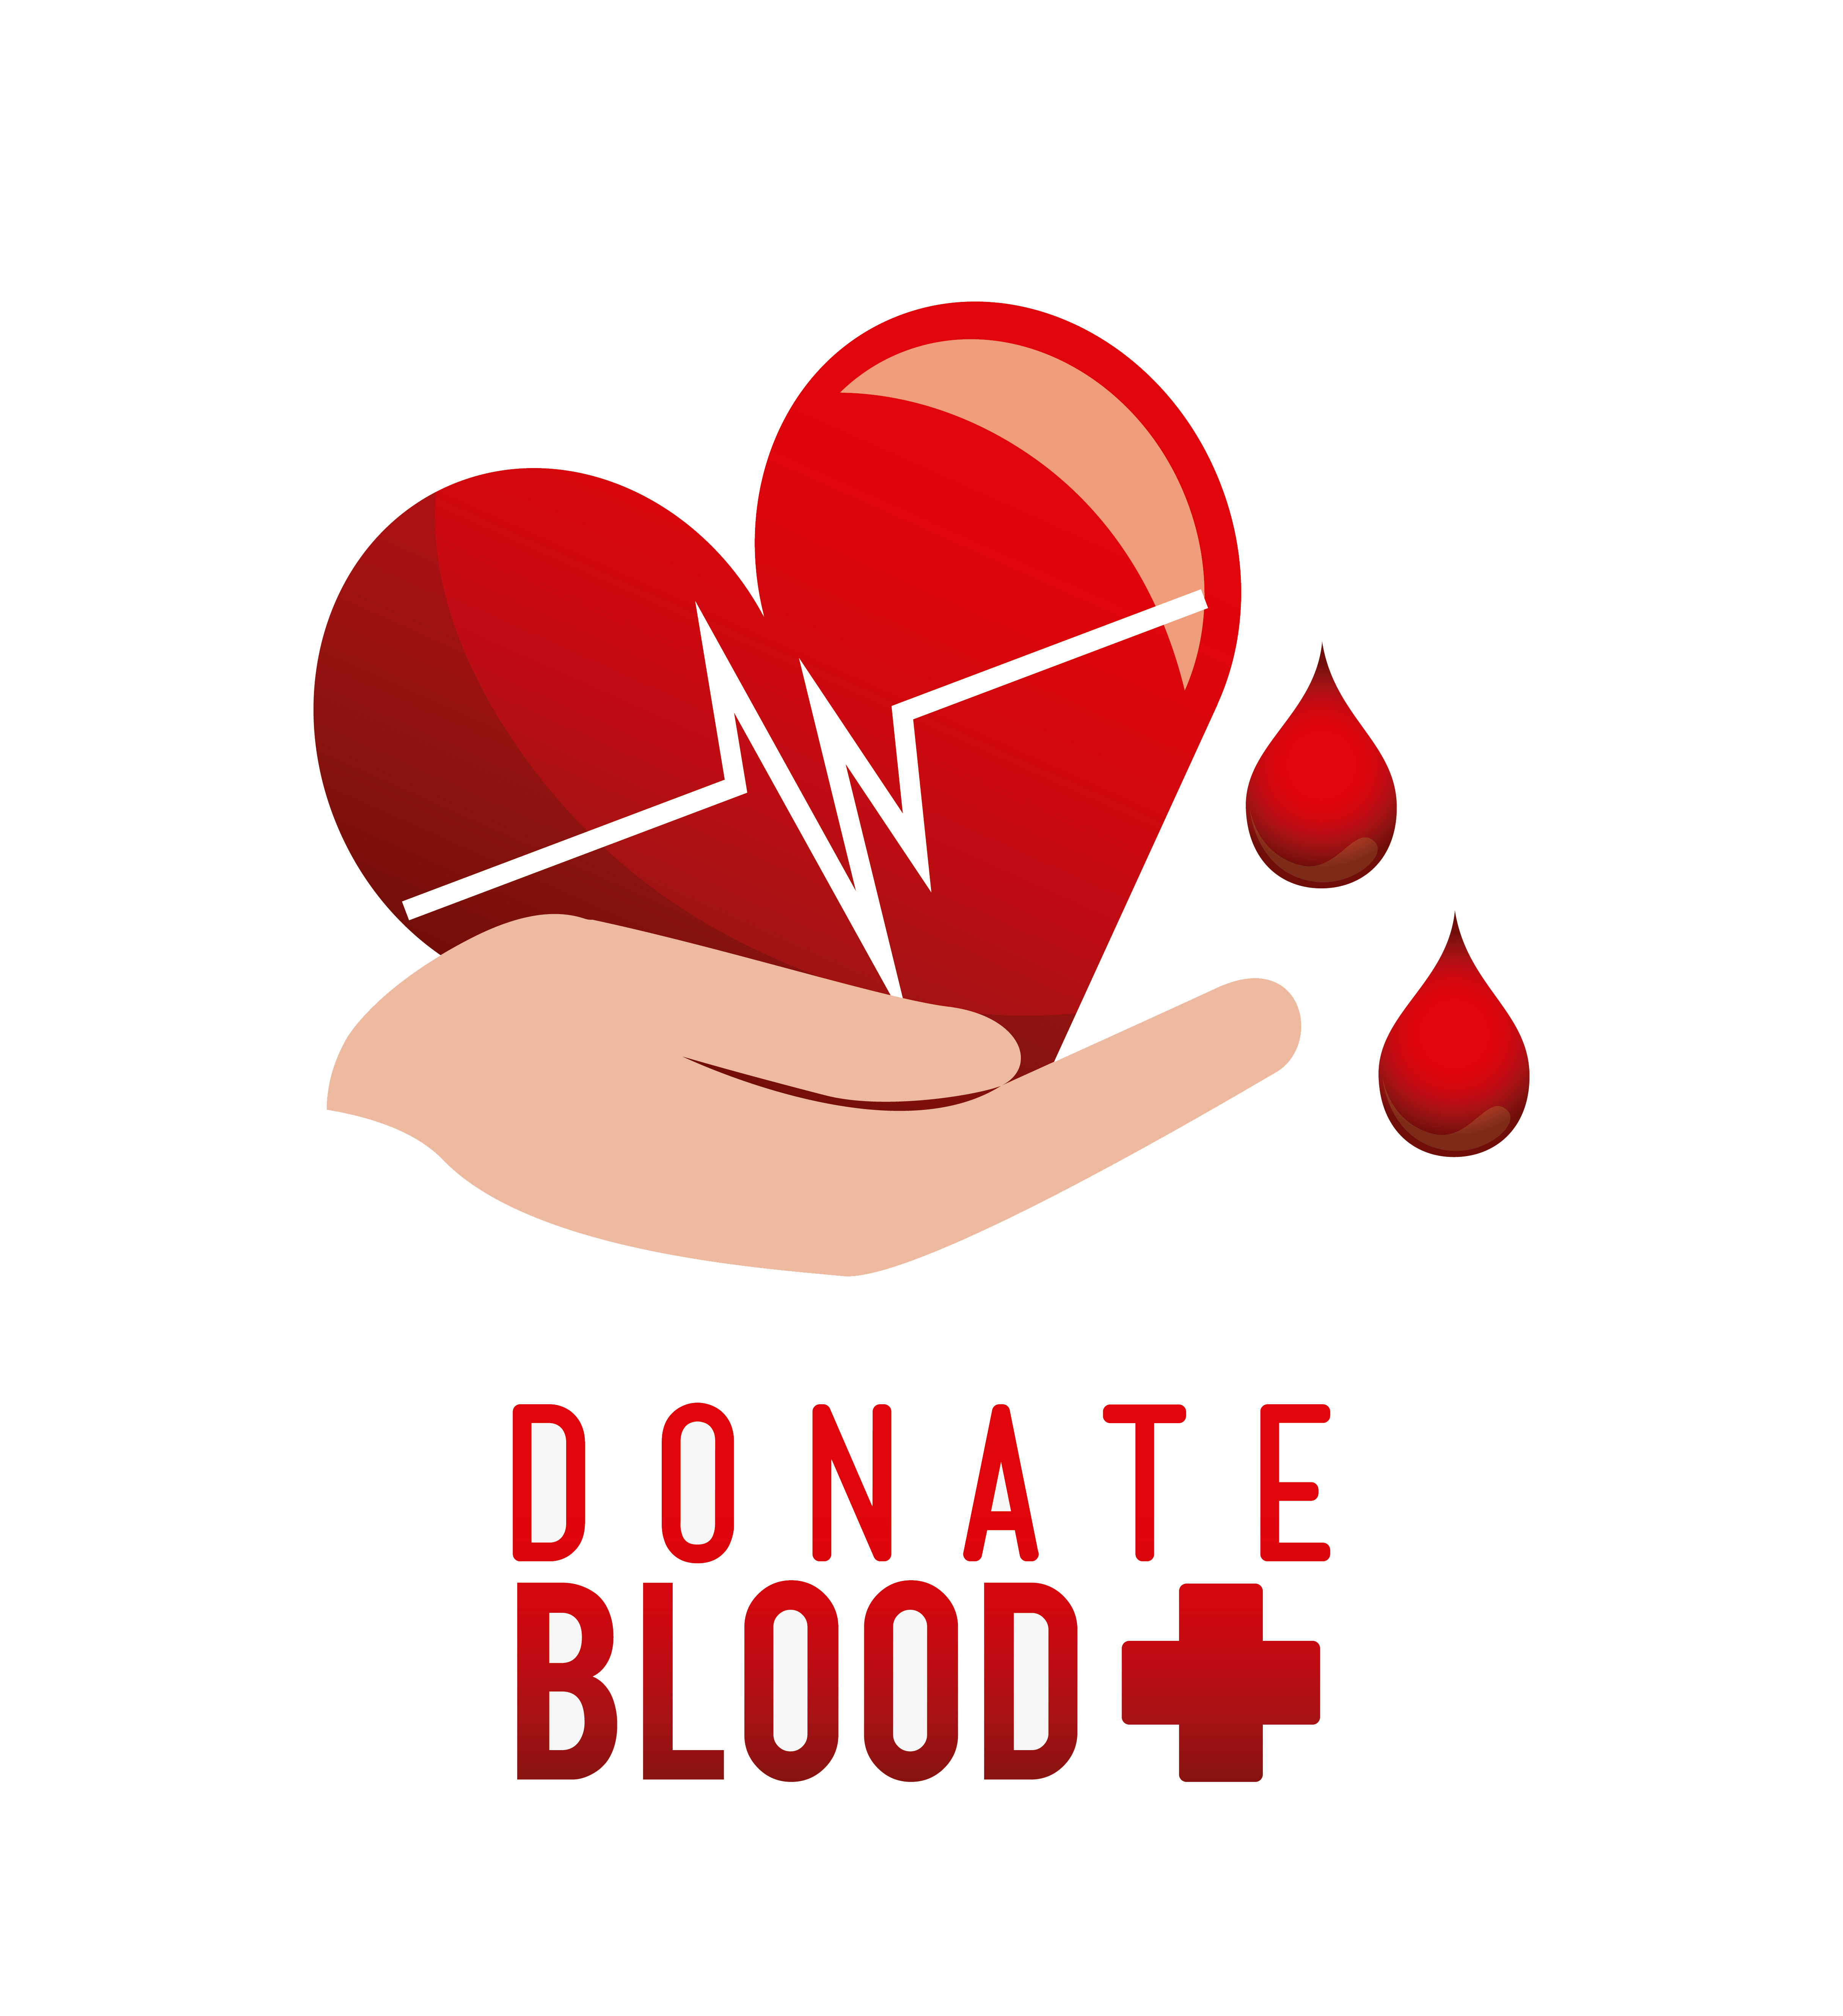 Донорство значок. Донорство крови. День донора символ. Эмблема донора крови. Символ донорства